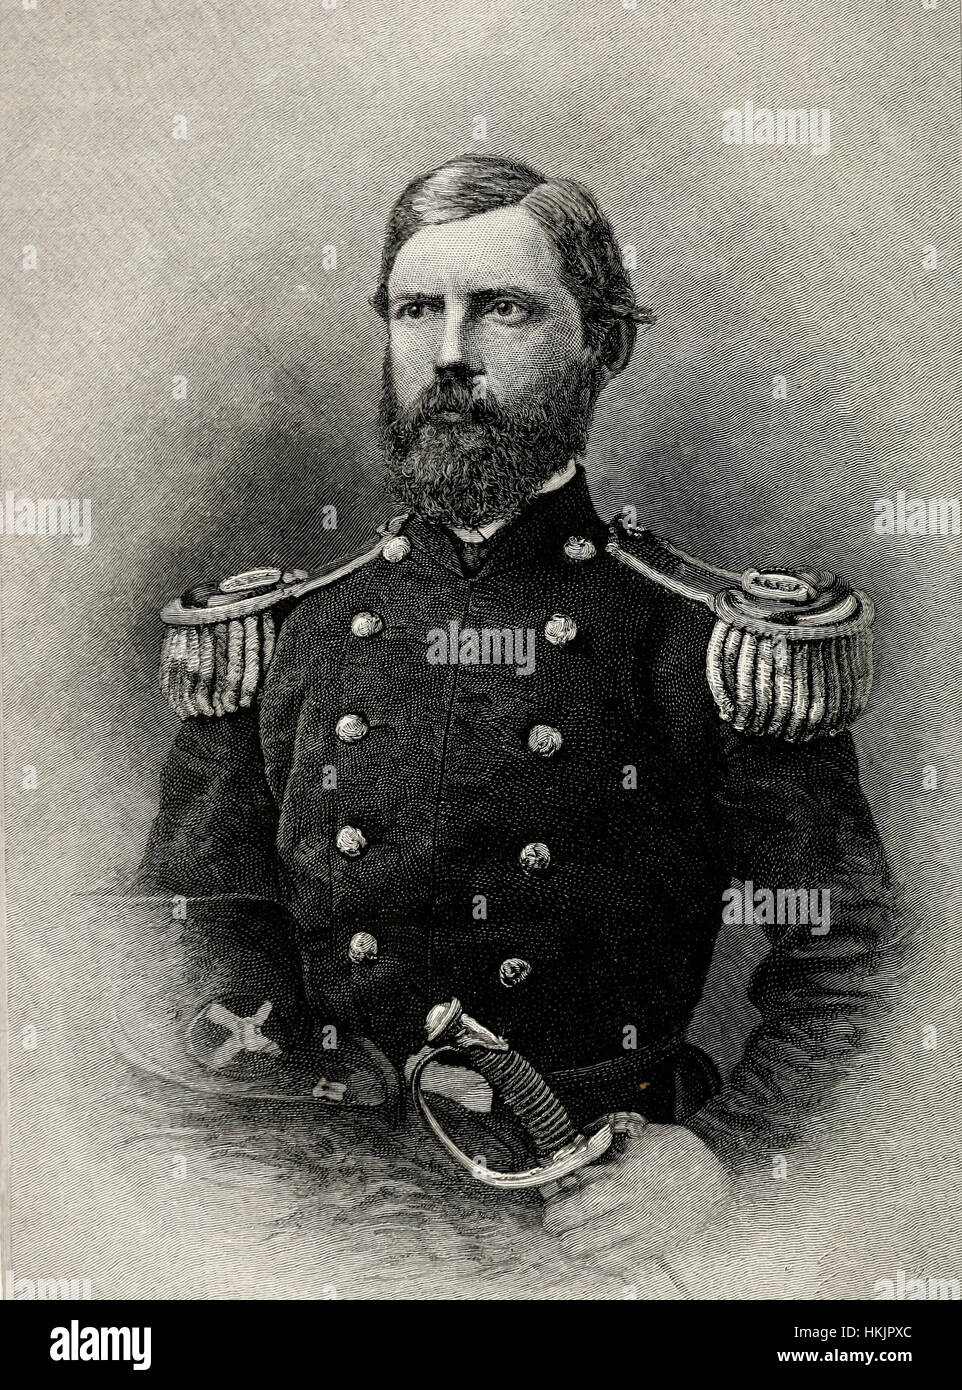 Le Major-général John F. Reynolds, armée de l'Union, États-Unis d'une guerre civile. Tués le premier jour de la bataille de Gettysburg Banque D'Images